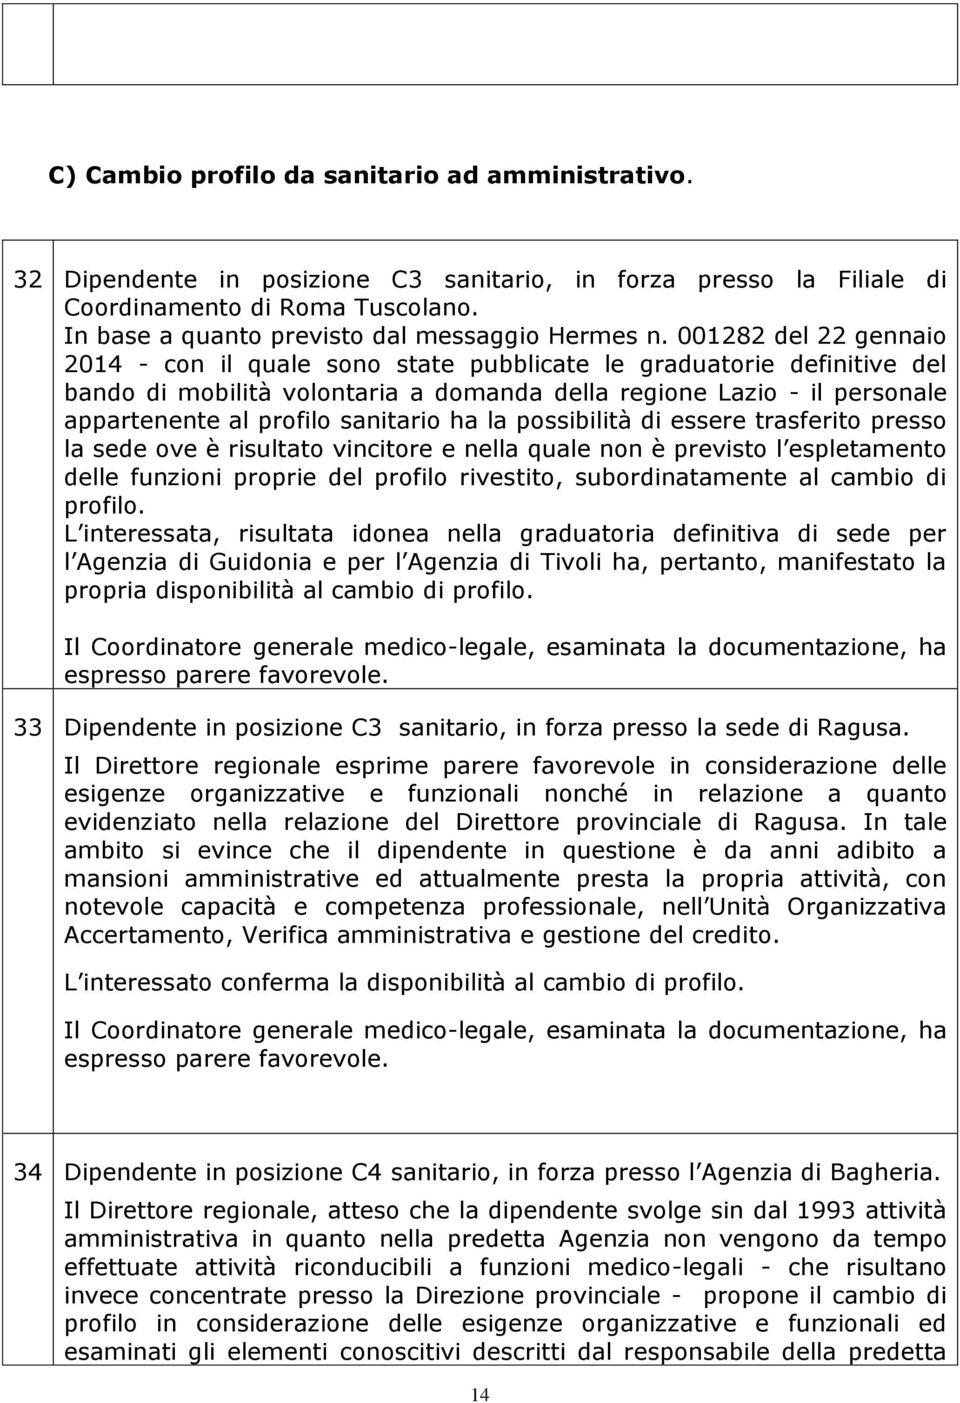 001282 del 22 gennaio 2014 - con il quale sono state pubblicate le graduatorie definitive del bando di mobilità volontaria a domanda della regione Lazio - il personale appartenente al profilo